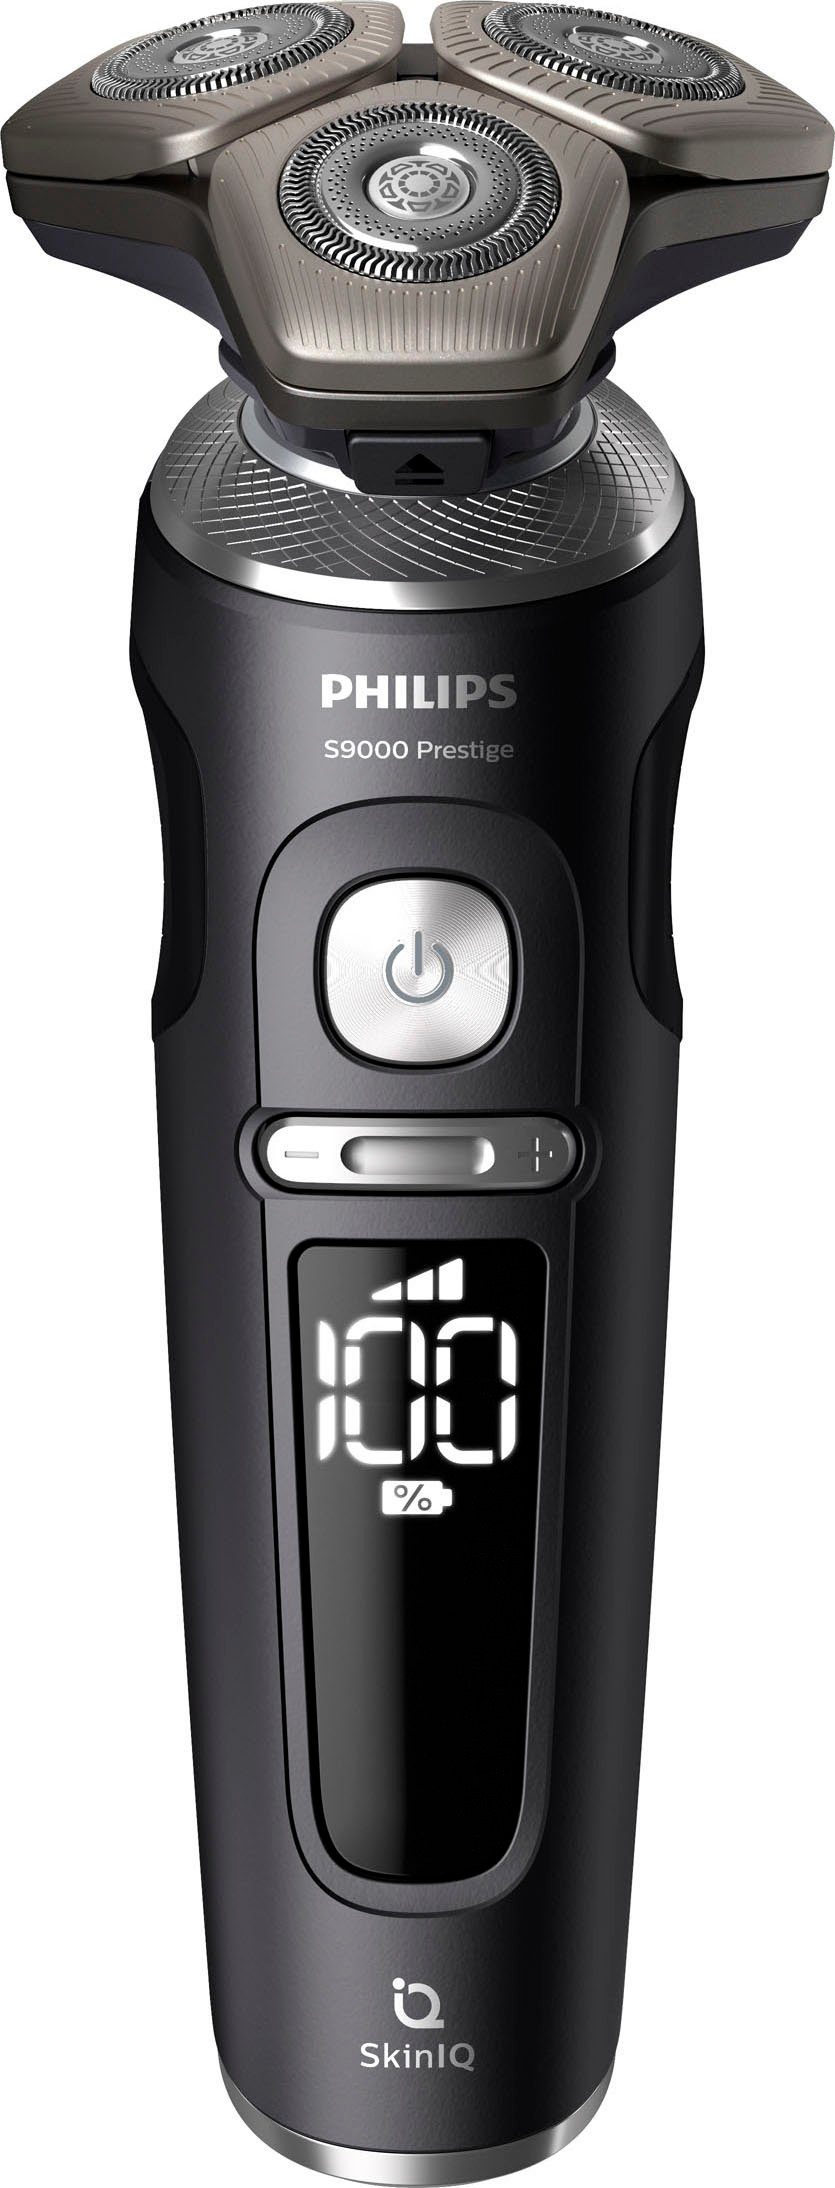 Philips Elektrorasierer Series 9000 Prestige SkinIQ 1, Aufsätze: SP9840/32, Technologie Etui, Reinigungsstation, mit